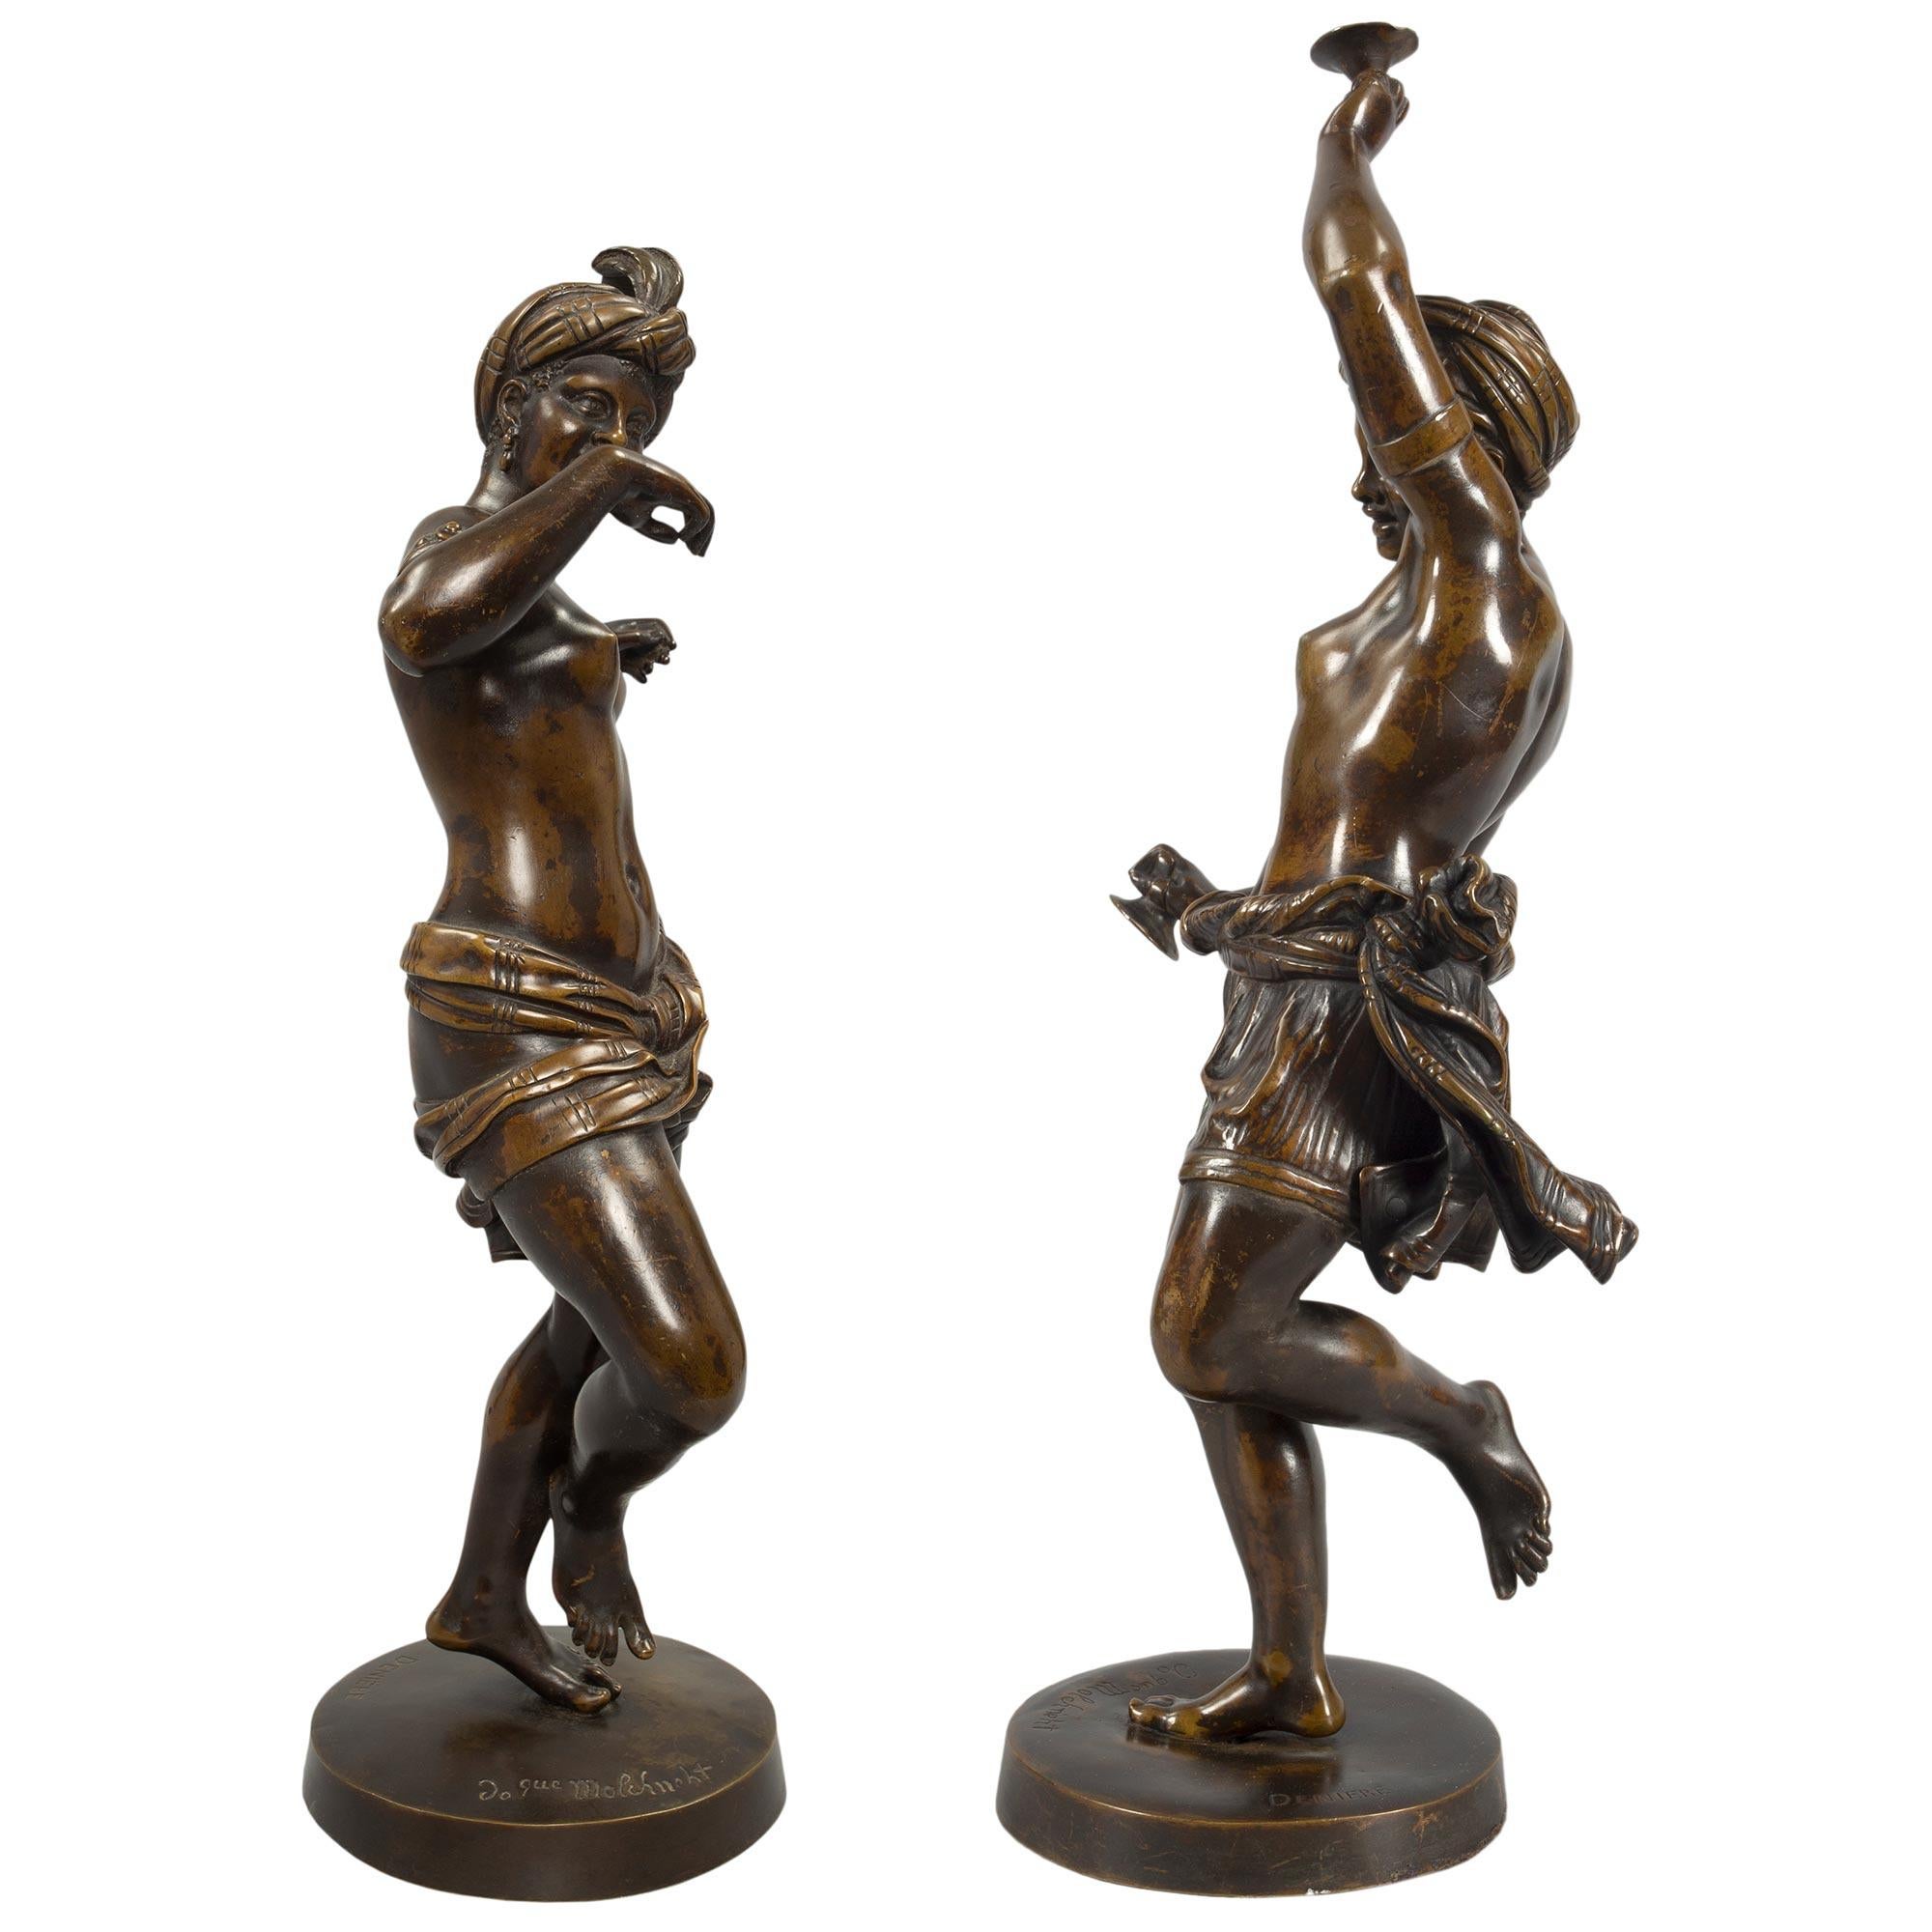 Paire de statues de grande qualité en bronze patiné de style néo-classique français du 19ème siècle, signées DENIERE. Chaque statue est surélevée par une base circulaire où figurent la signature ainsi qu'une inscription. Les statues ci-dessus